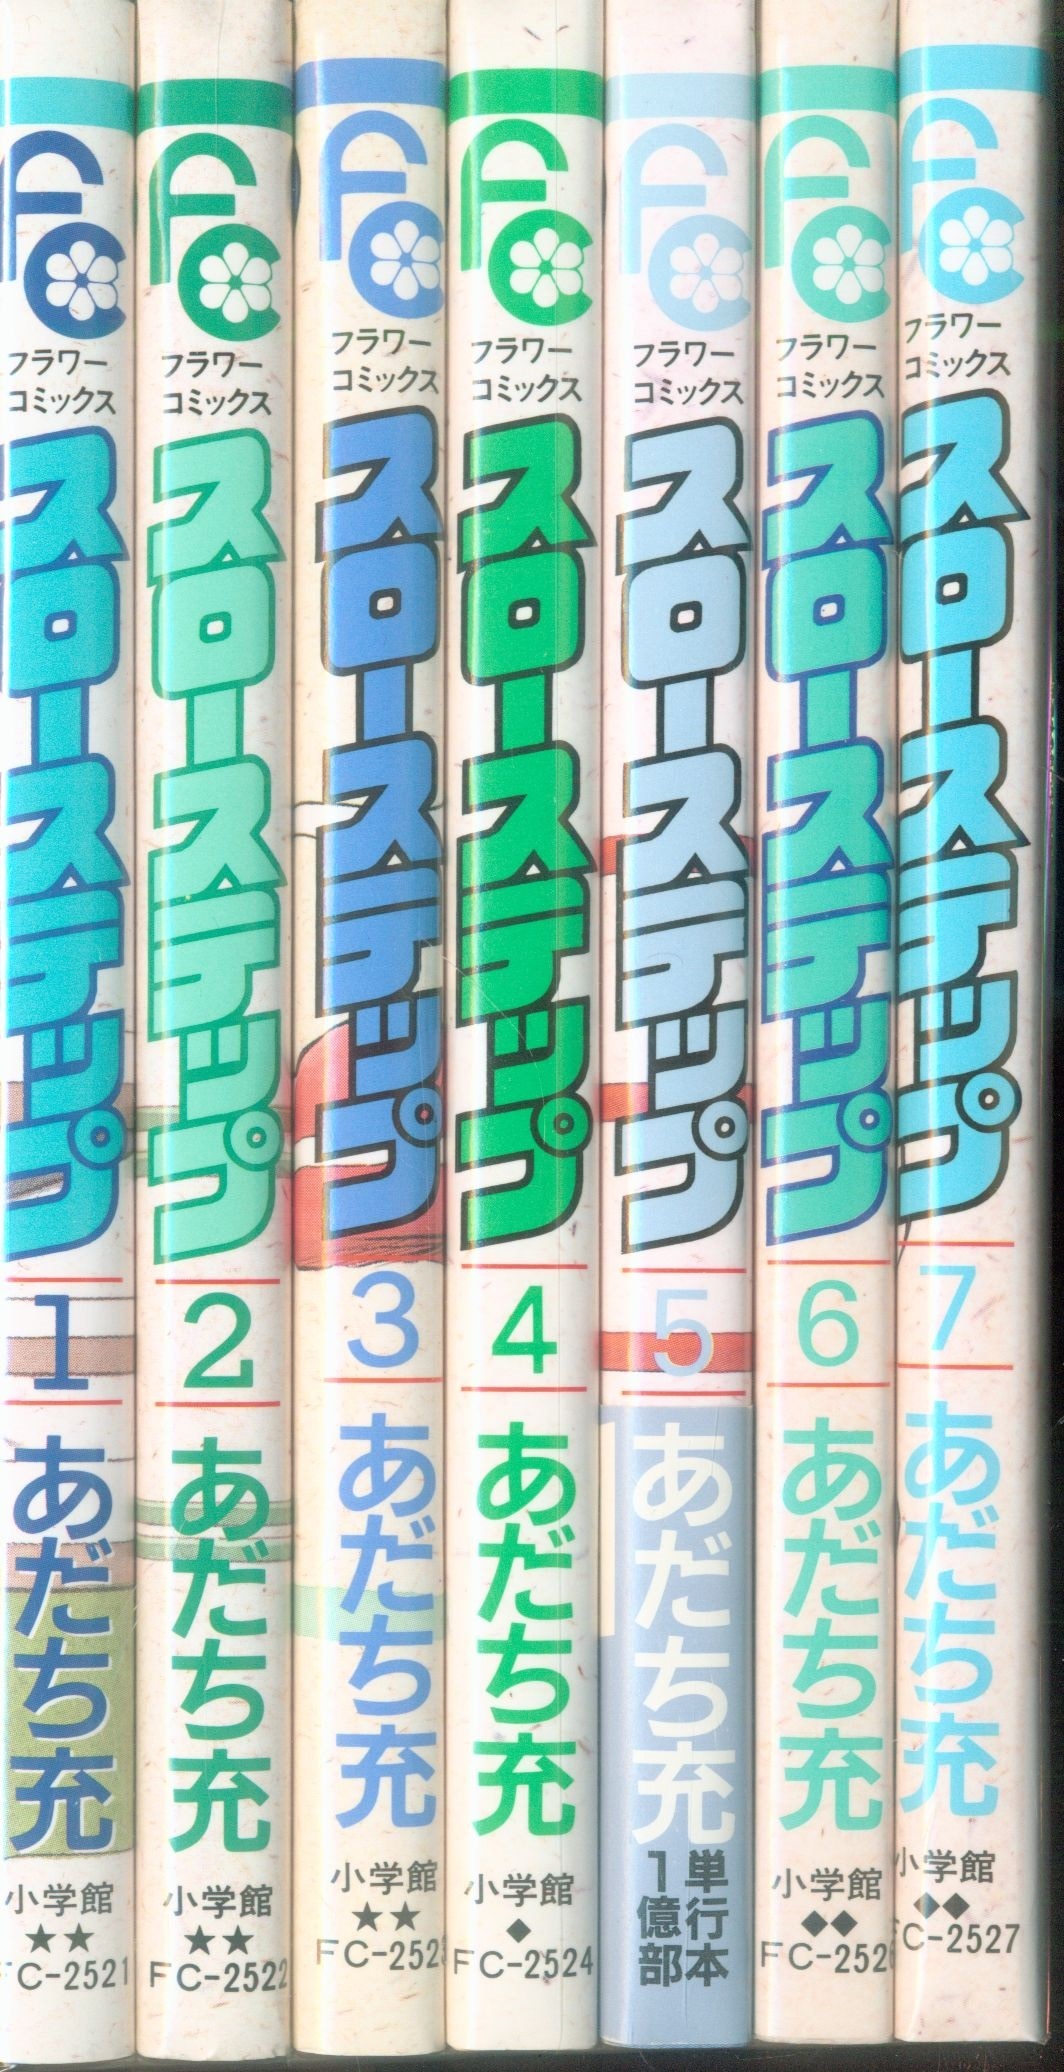 小学館 フラワーコミックス あだち充 スローステップ 初版 全7巻 初版セット まんだらけ Mandarake